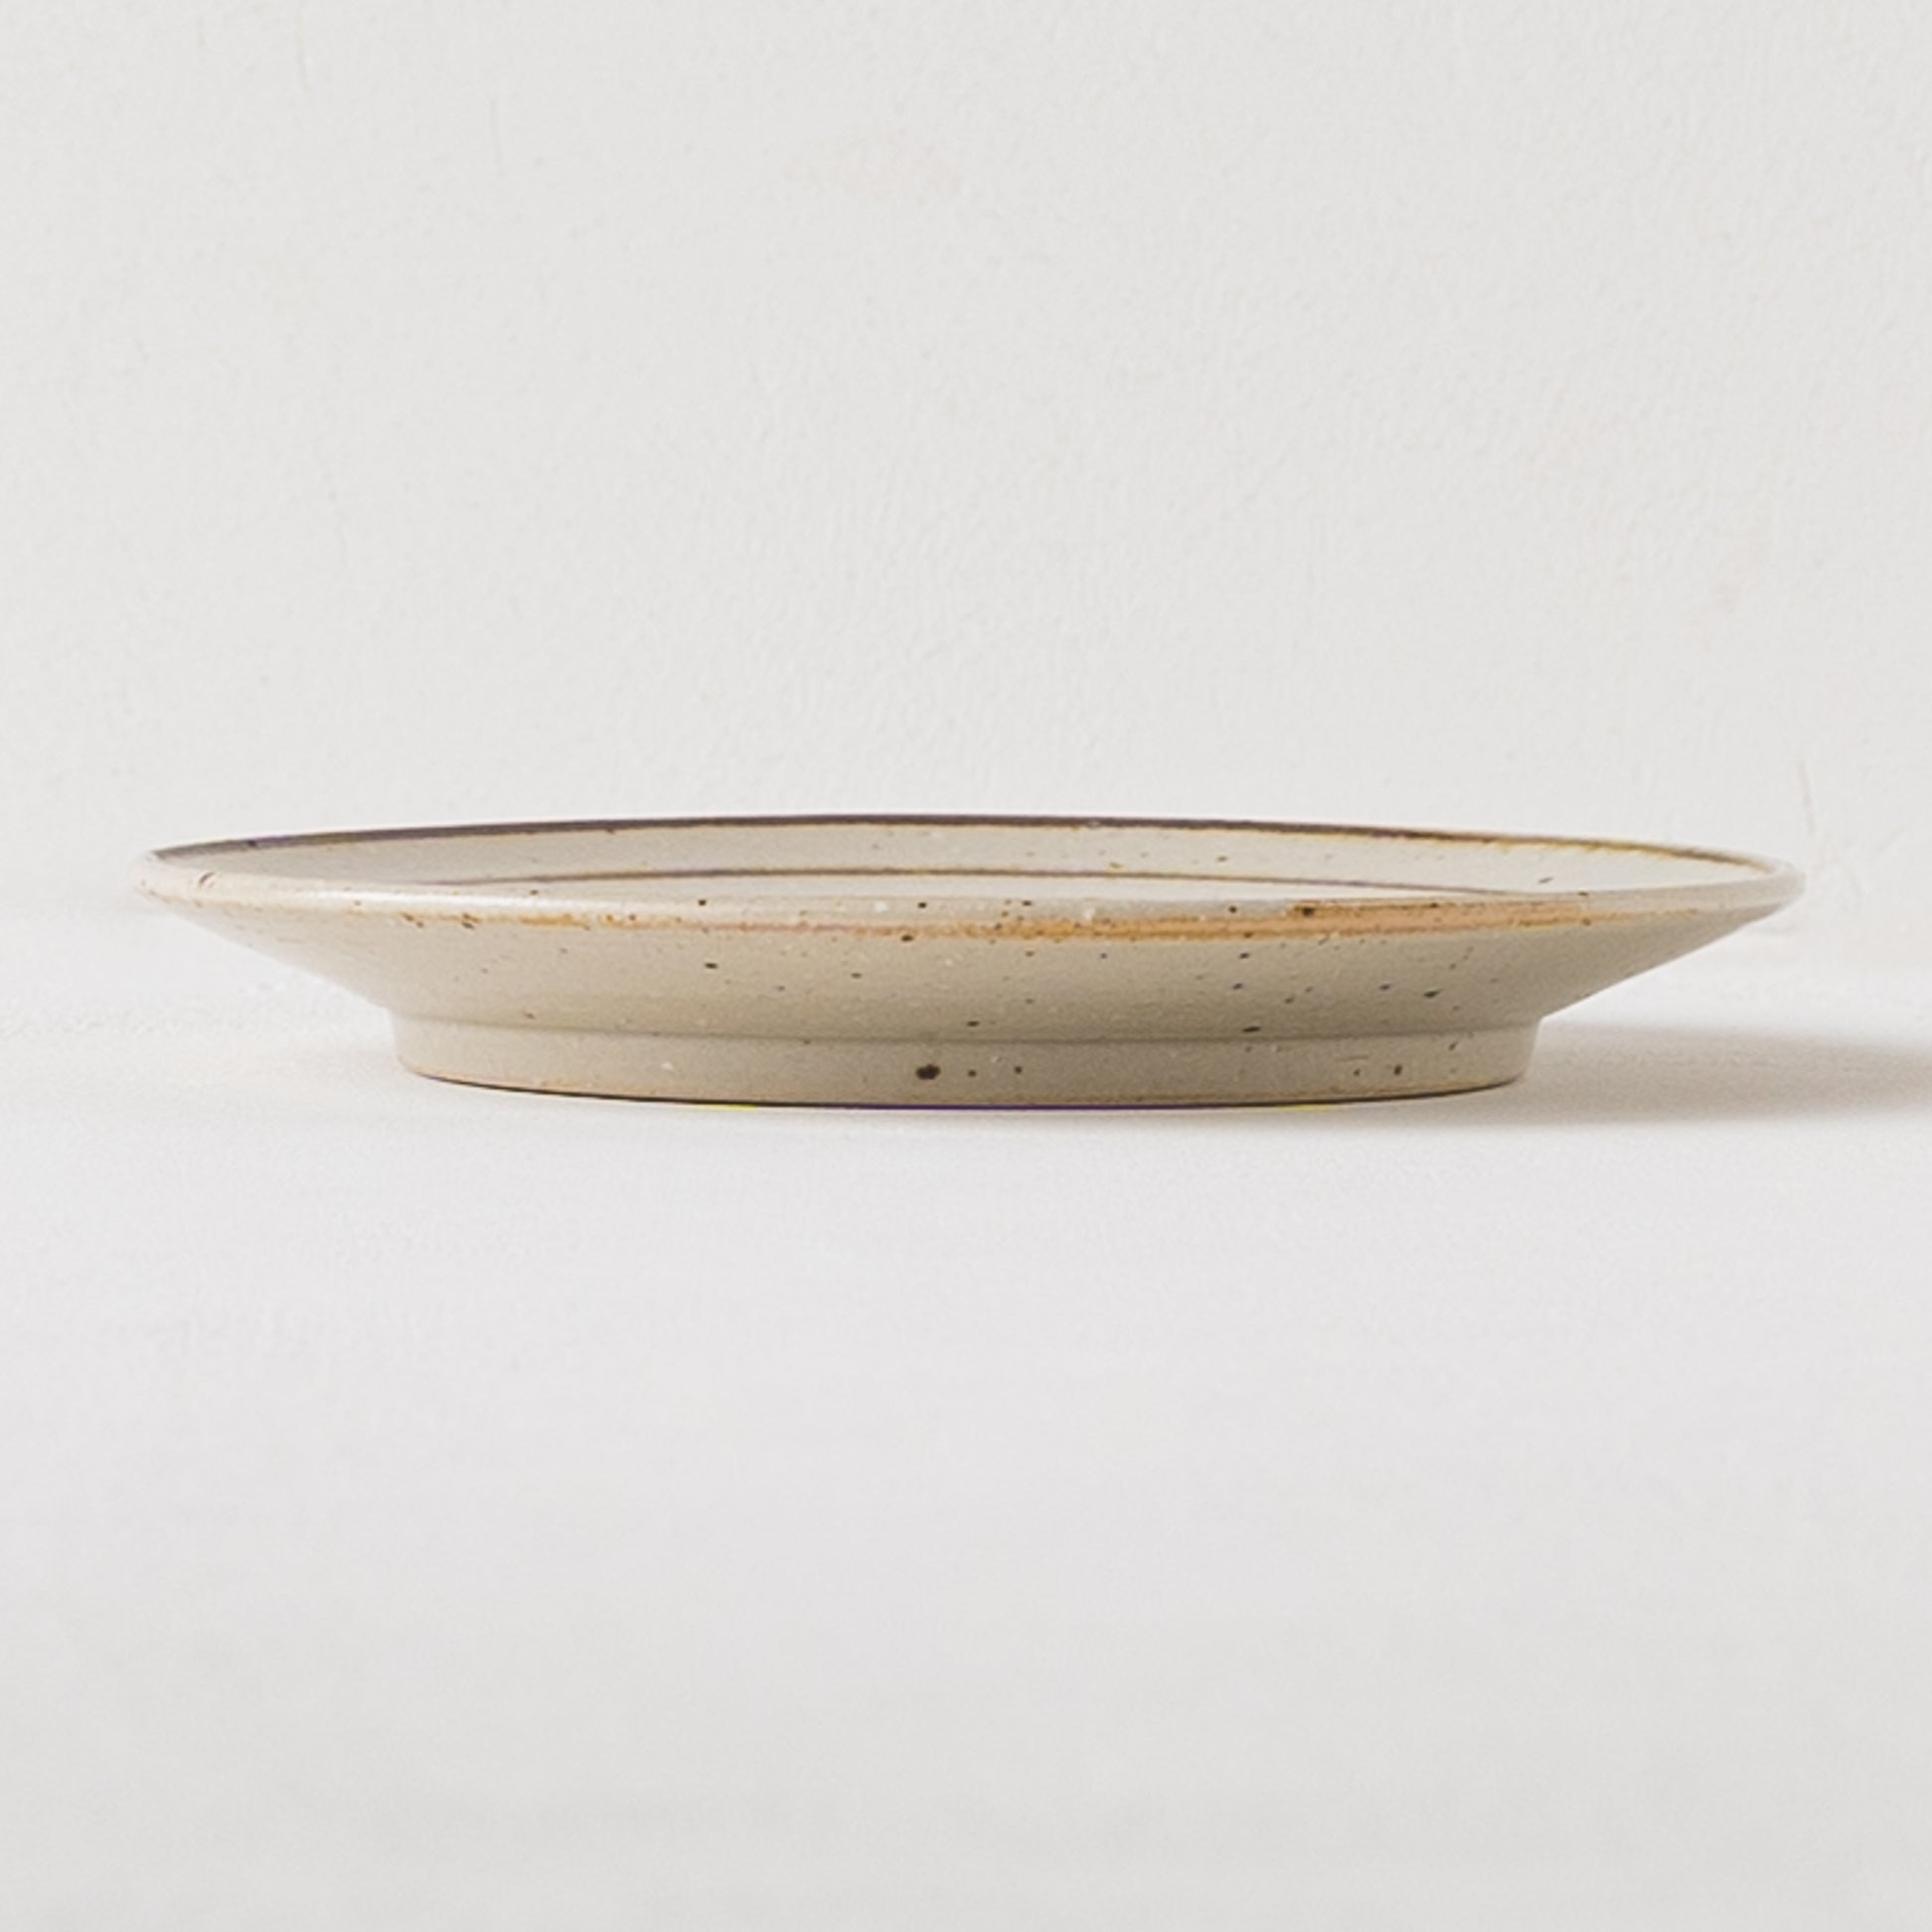 お料理も器も素敵に映える冨本大輔さんの灰釉鉄絵5寸リム皿